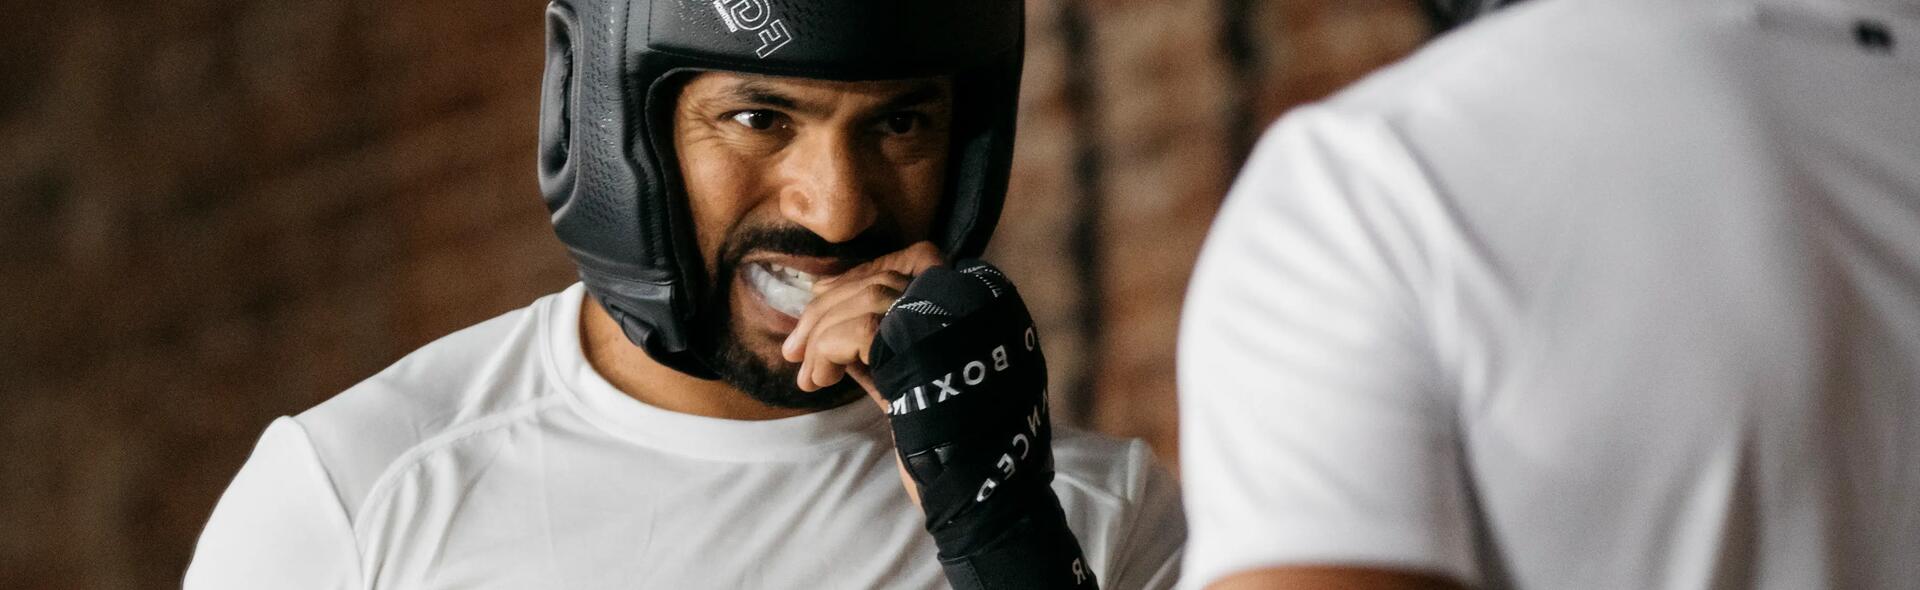 mężczyzna wkładający ochraniacz na zęby do trenowania boksu 